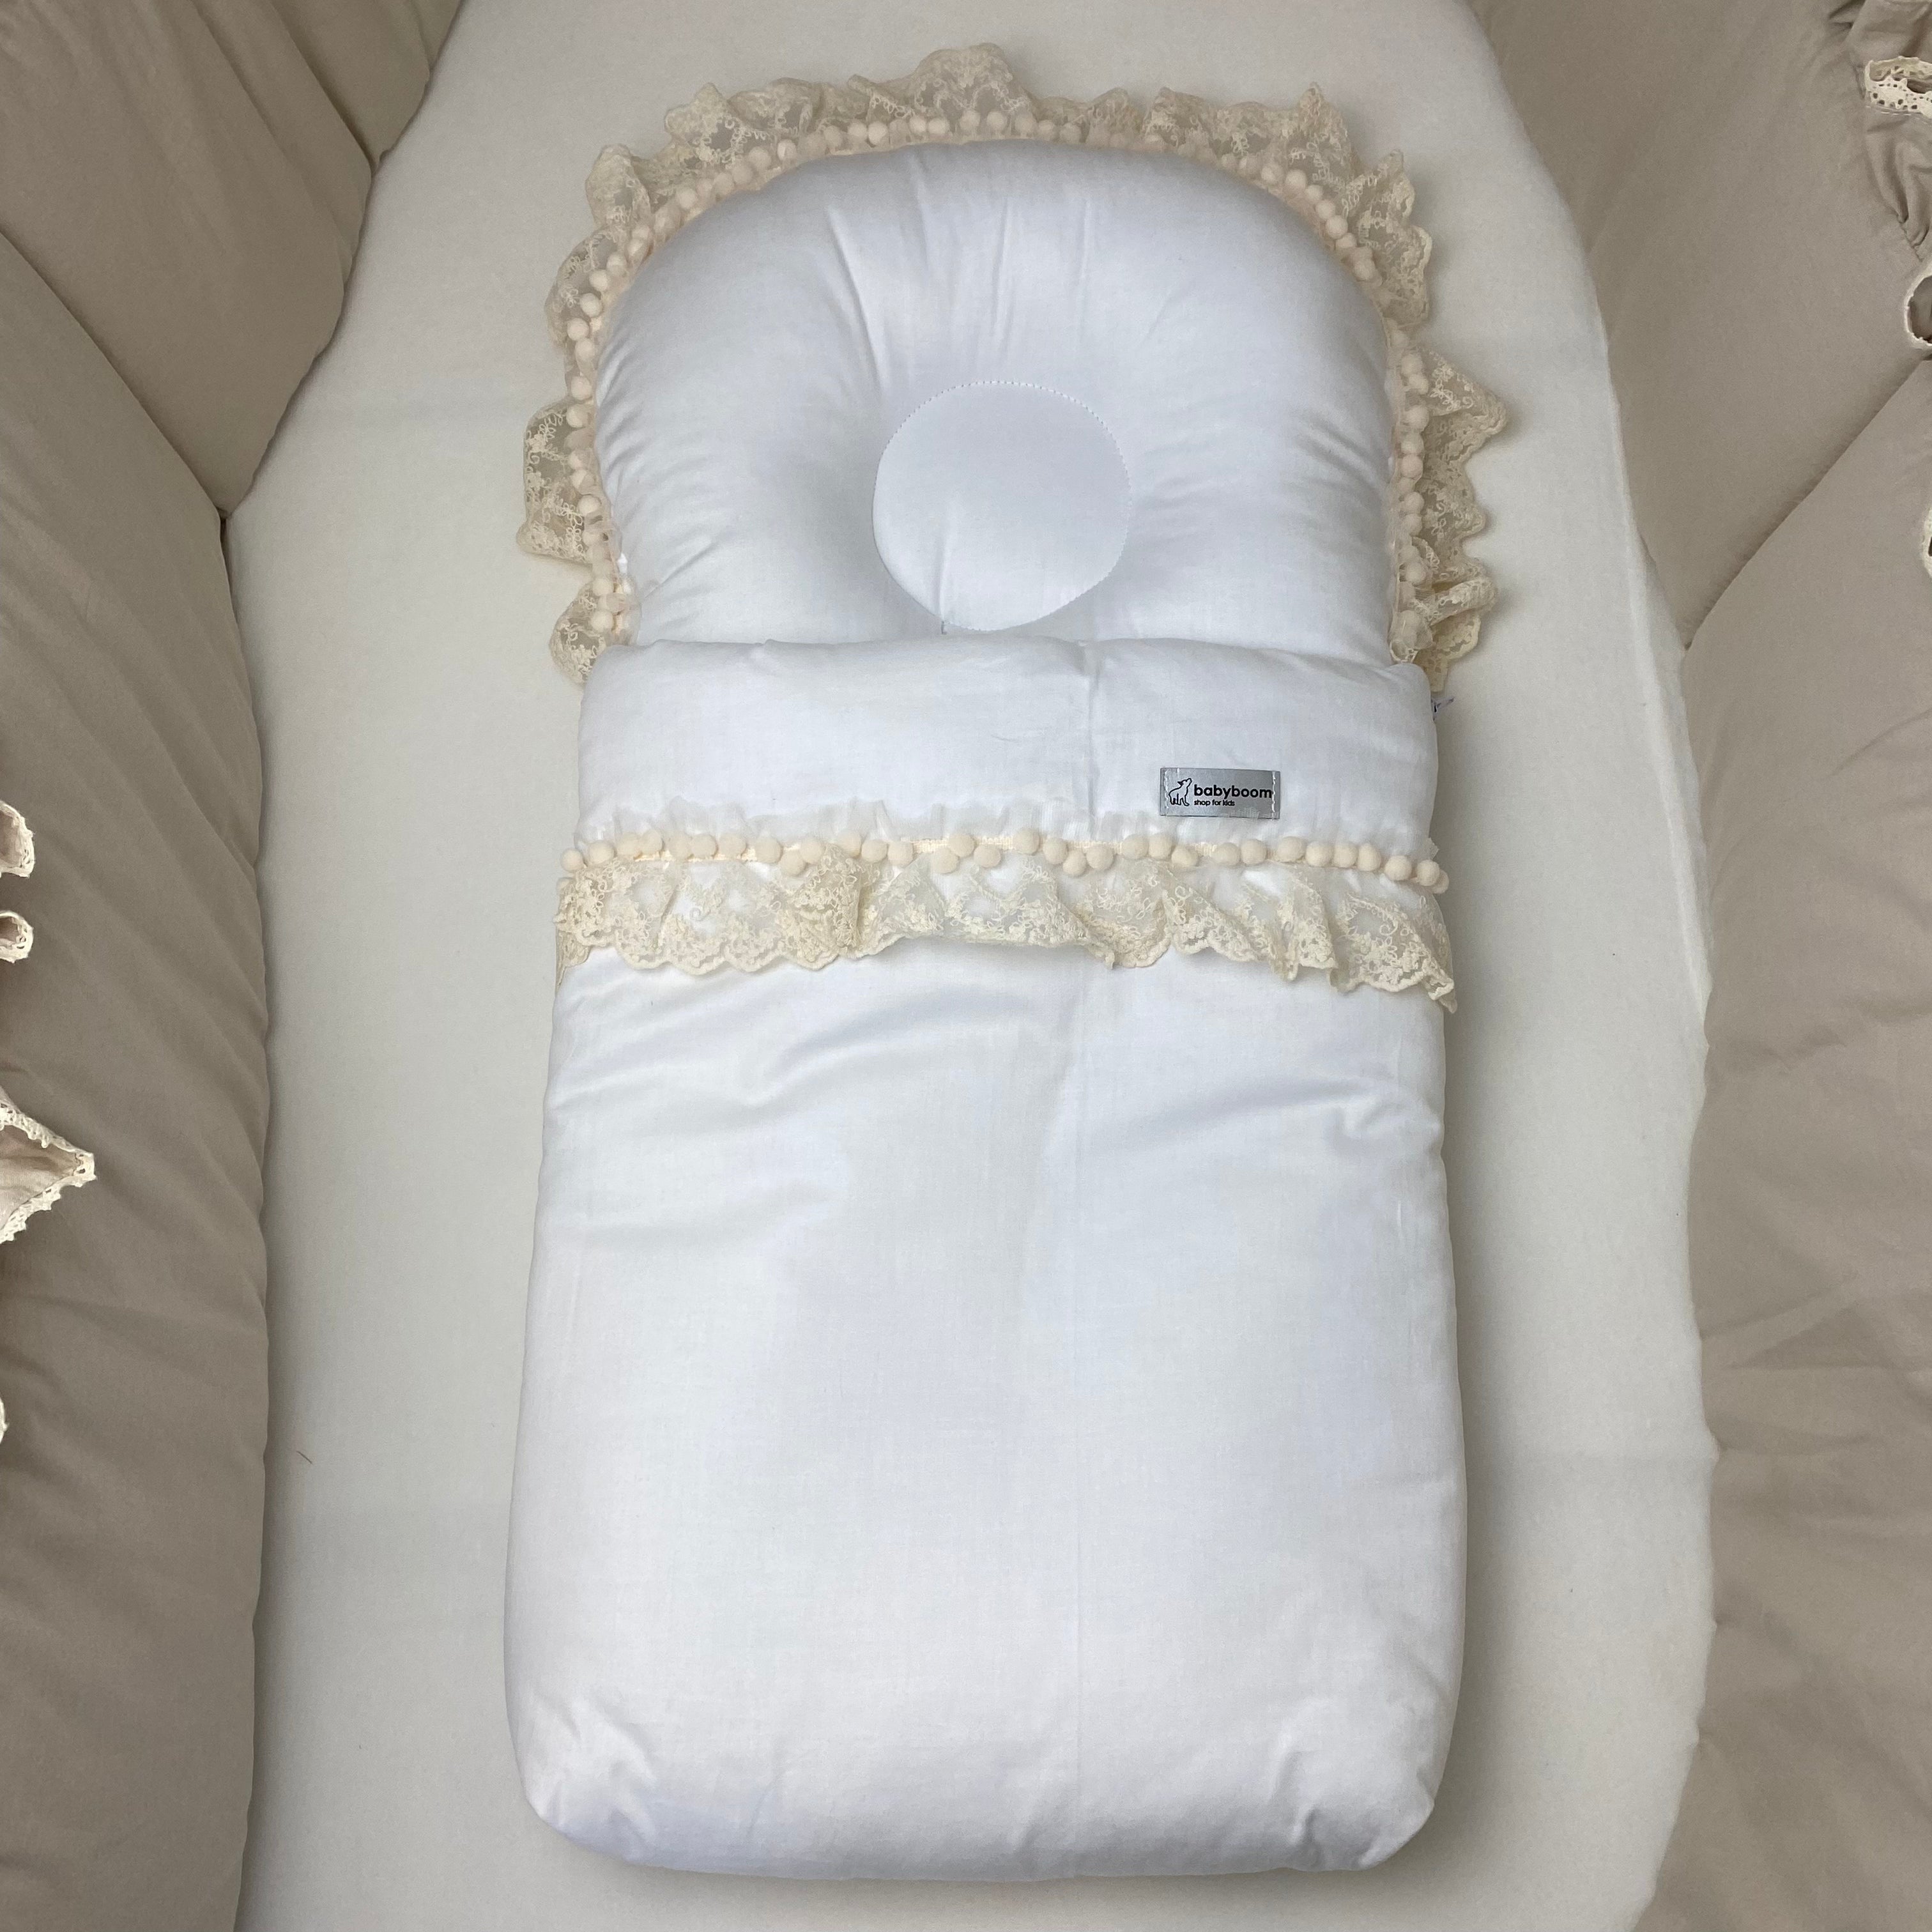 Premium Babyschlafsack "Delicious" mit Spitze & Bommelchen